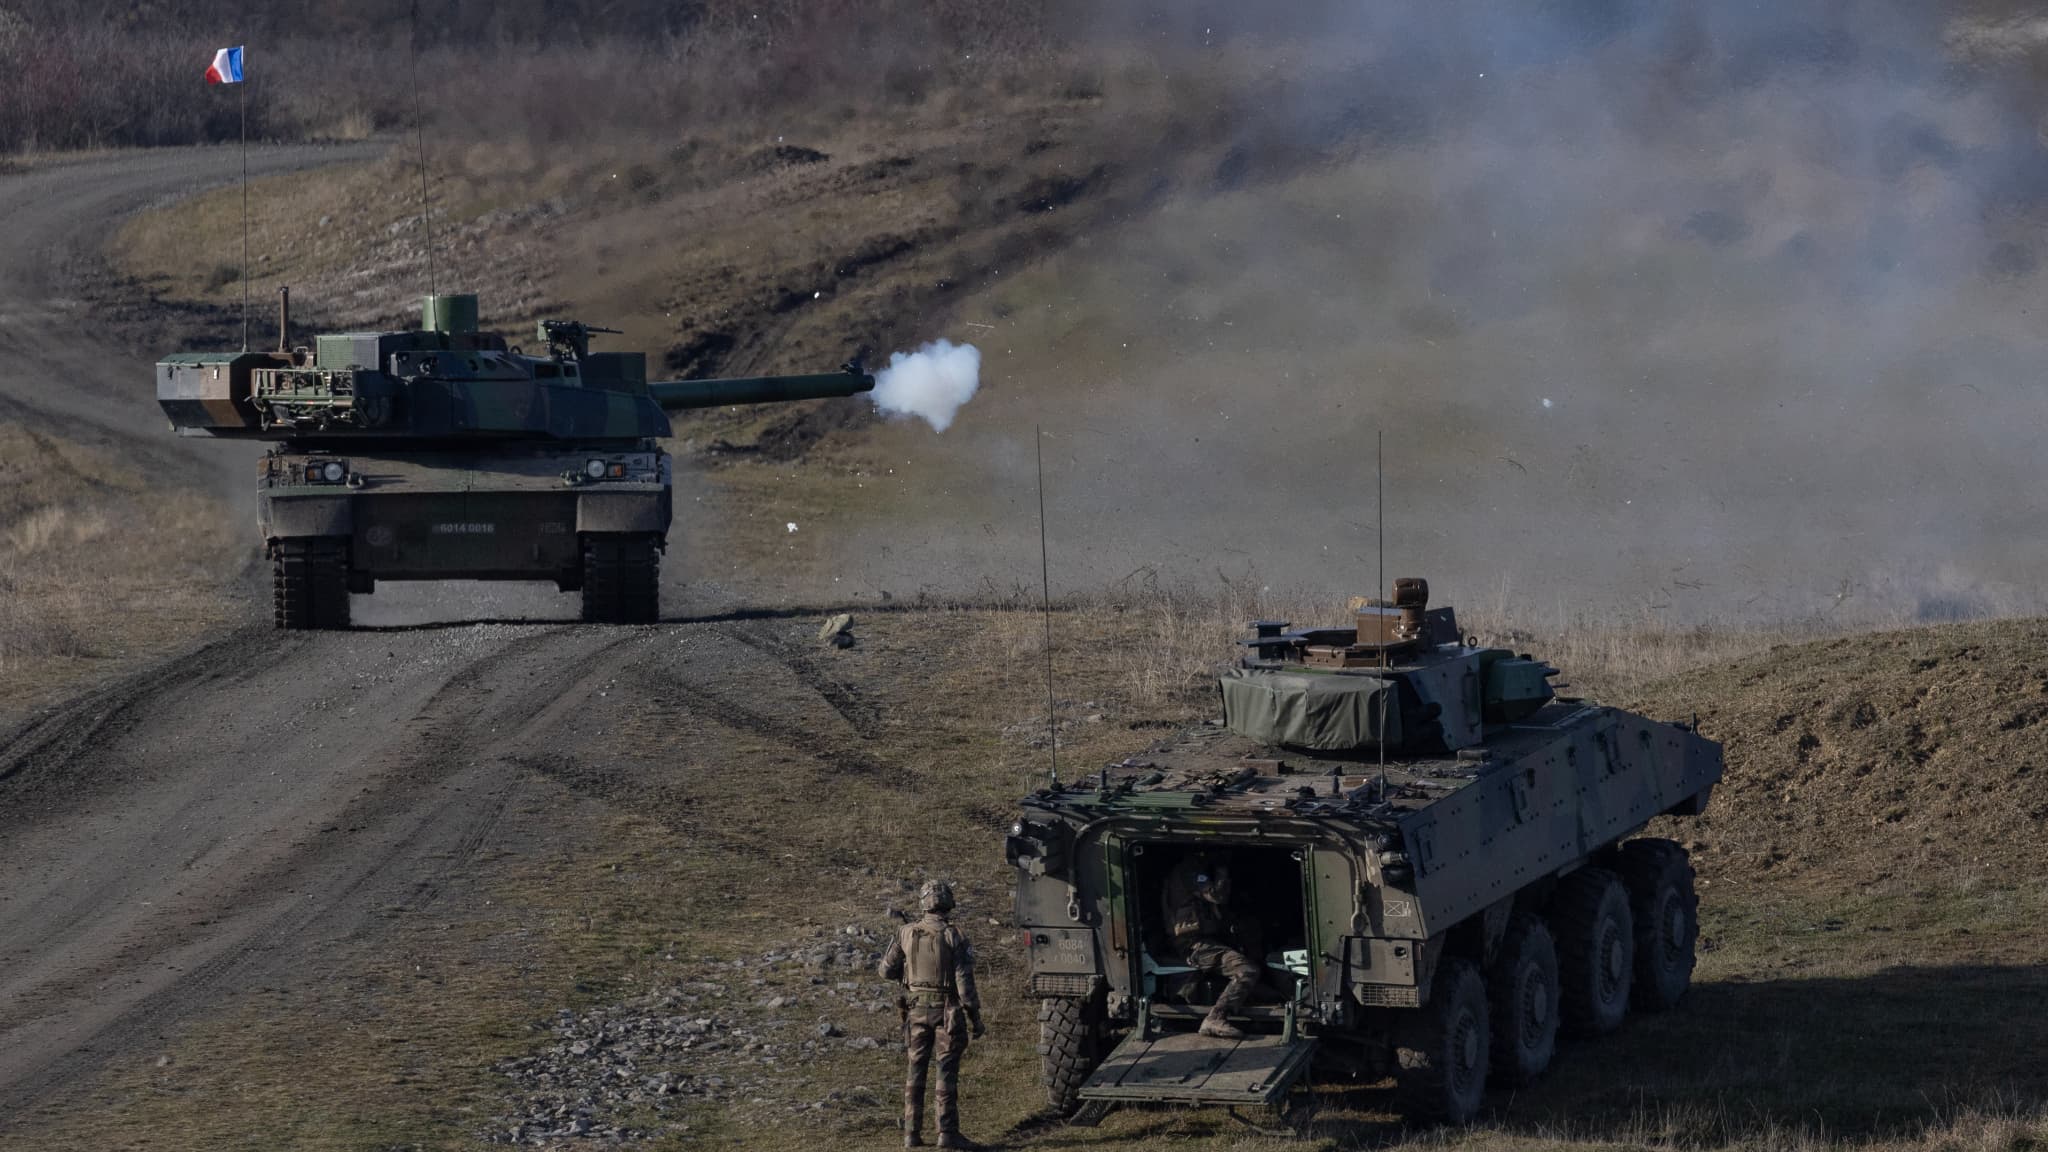 Executive plant, Leclerc-Panzer in die Ukraine zu liefern